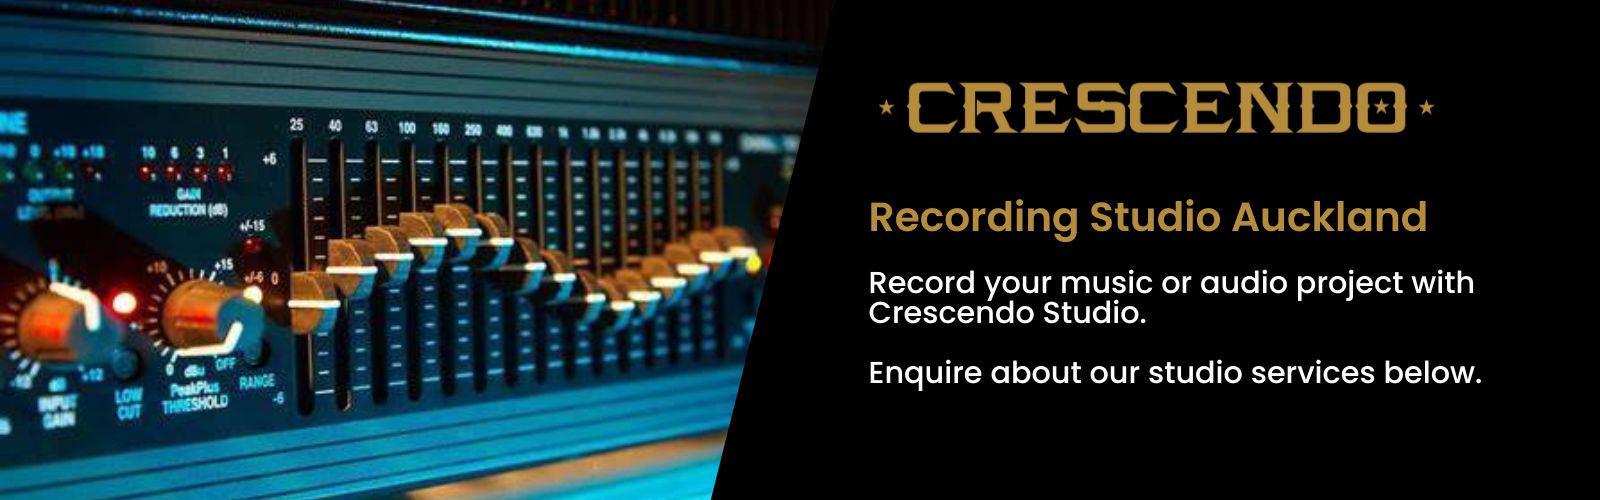 Music recording desk with Crescendo studio logo